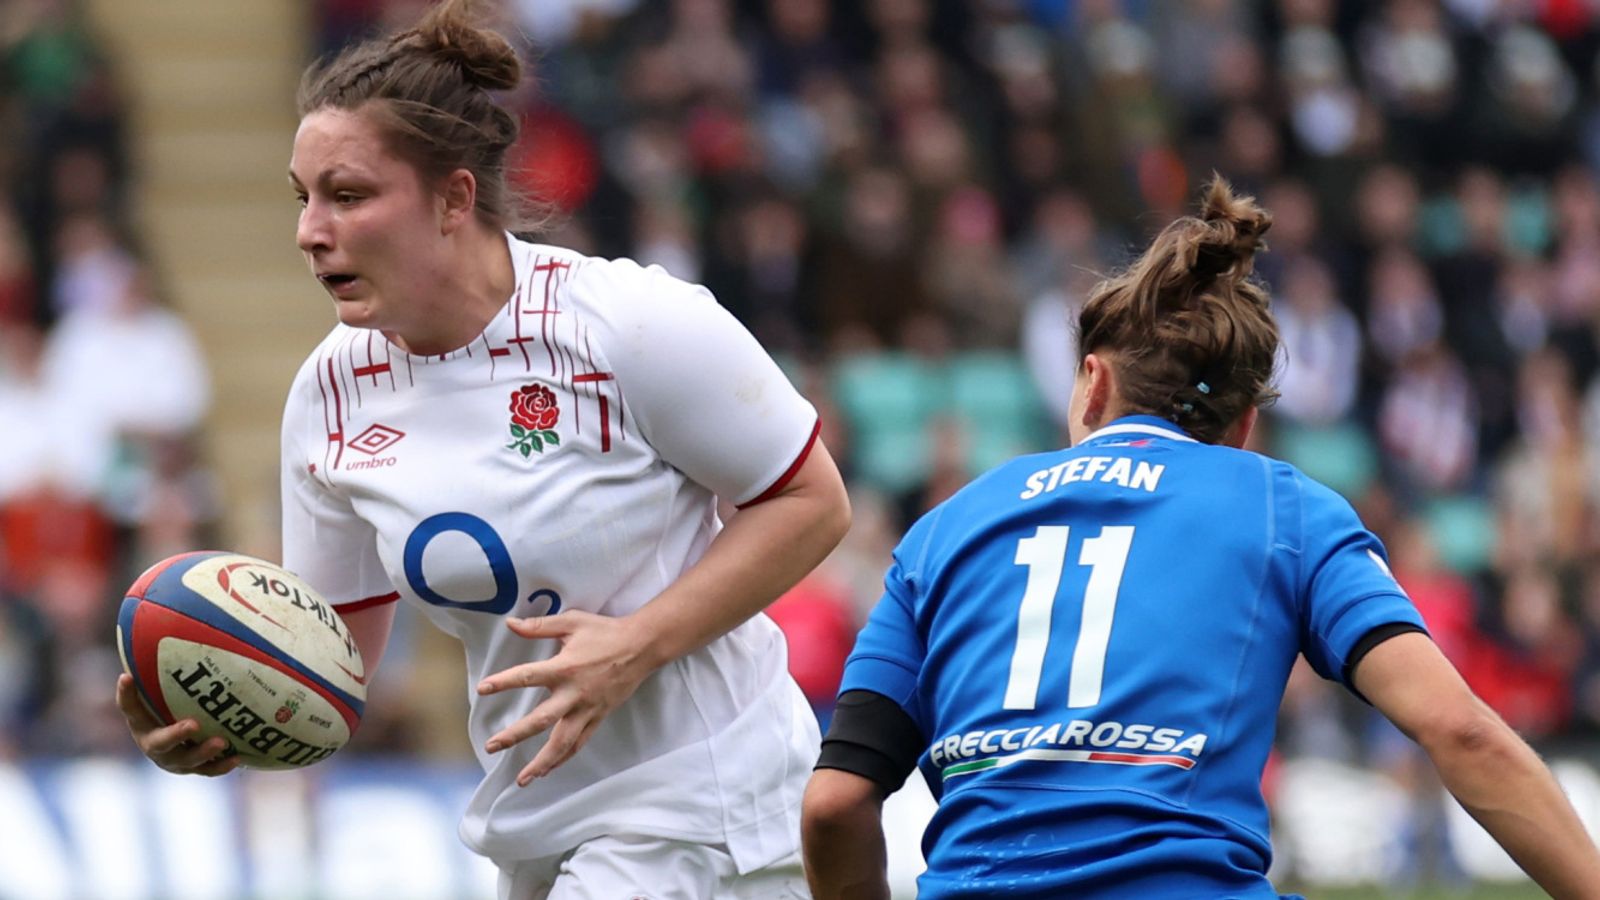 Seis Naciones Femenina: Amy Cokayne de Inglaterra se perderá el choque de Gales;  Emma Sing debuta por primera vez en Red Roses |  Noticias de la Unión de Rugby